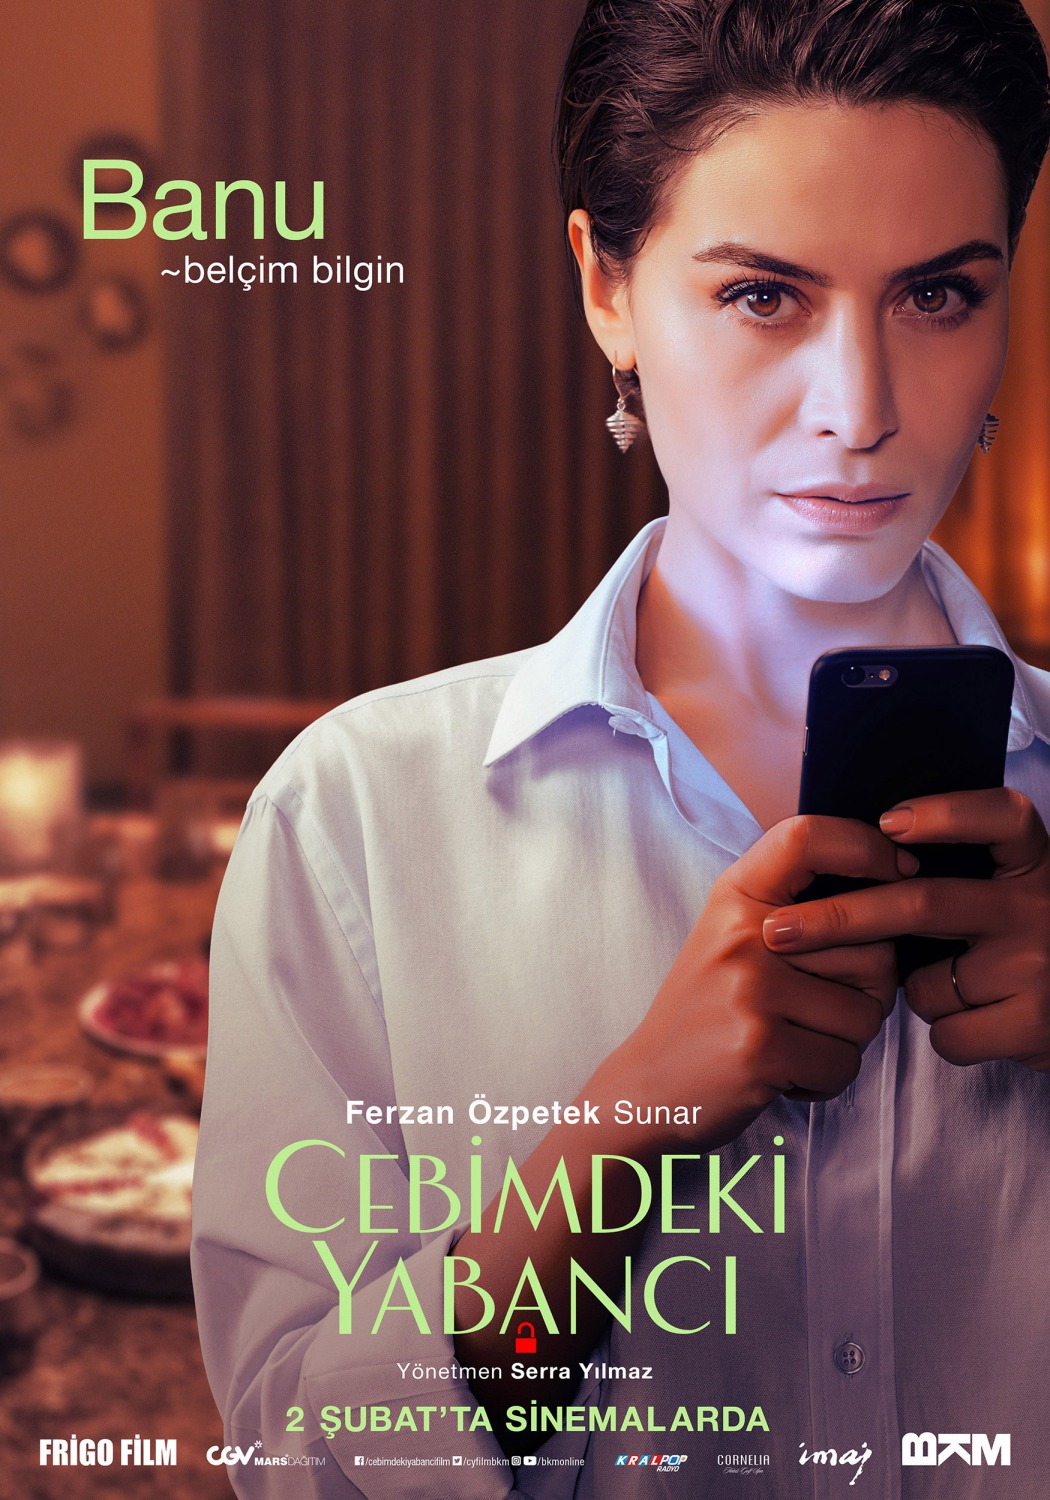 Extra Large Movie Poster Image for Cebimdeki Yabancı (#4 of 10)